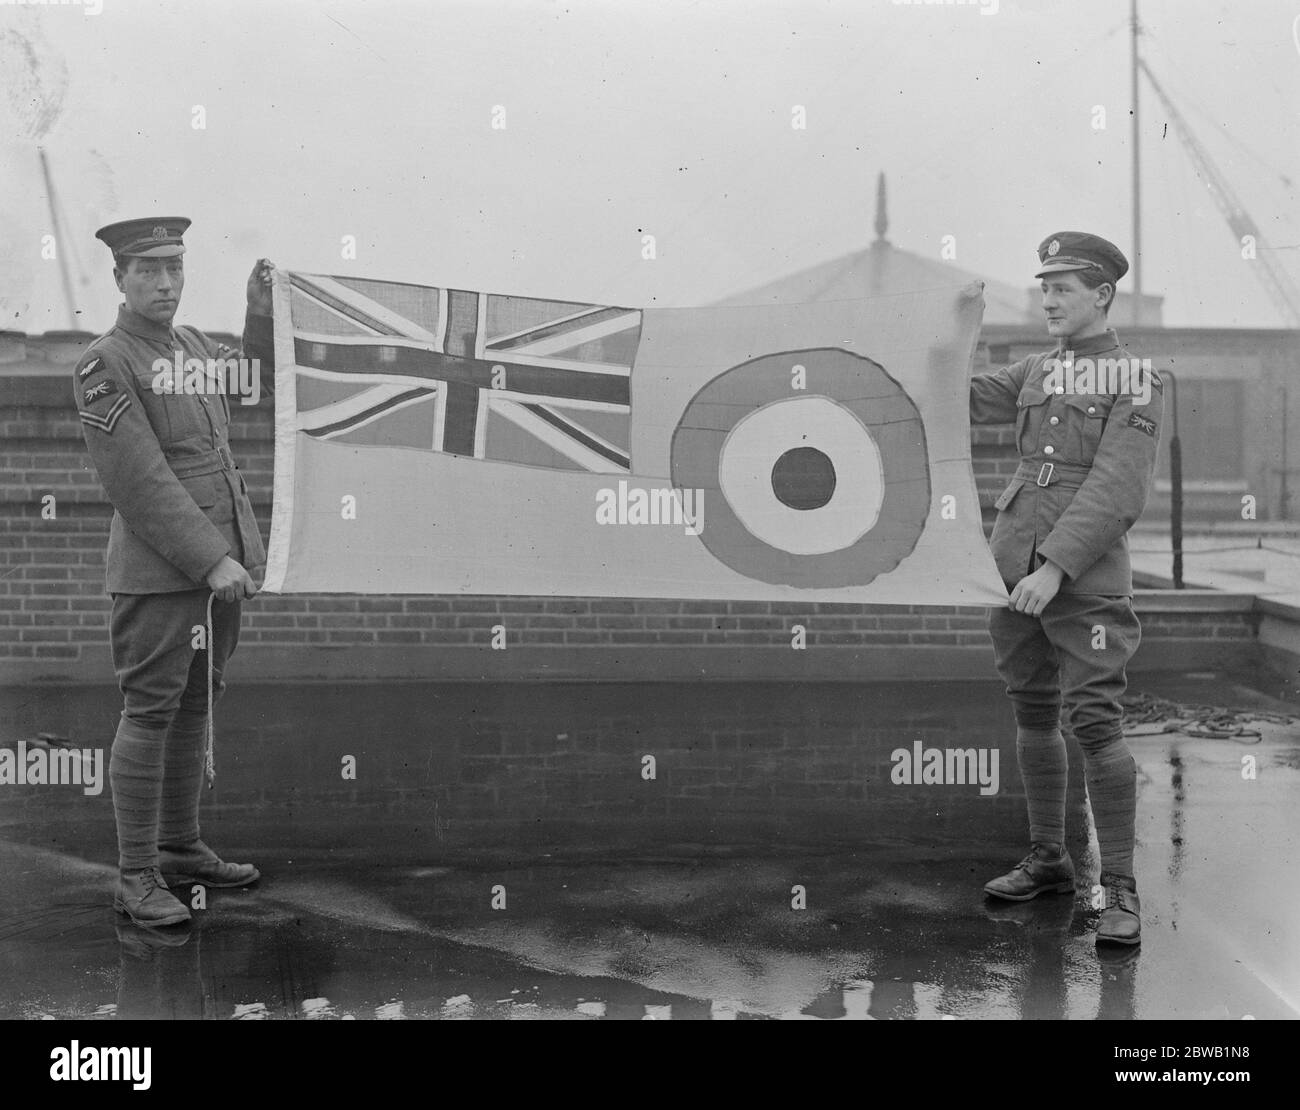 Levage du nouvel ensign de la Royal Air Force . Les membres de la RAF avec le drapeau avant d'être hissé au ministère de l'Air . 5 janvier 1921 Banque D'Images